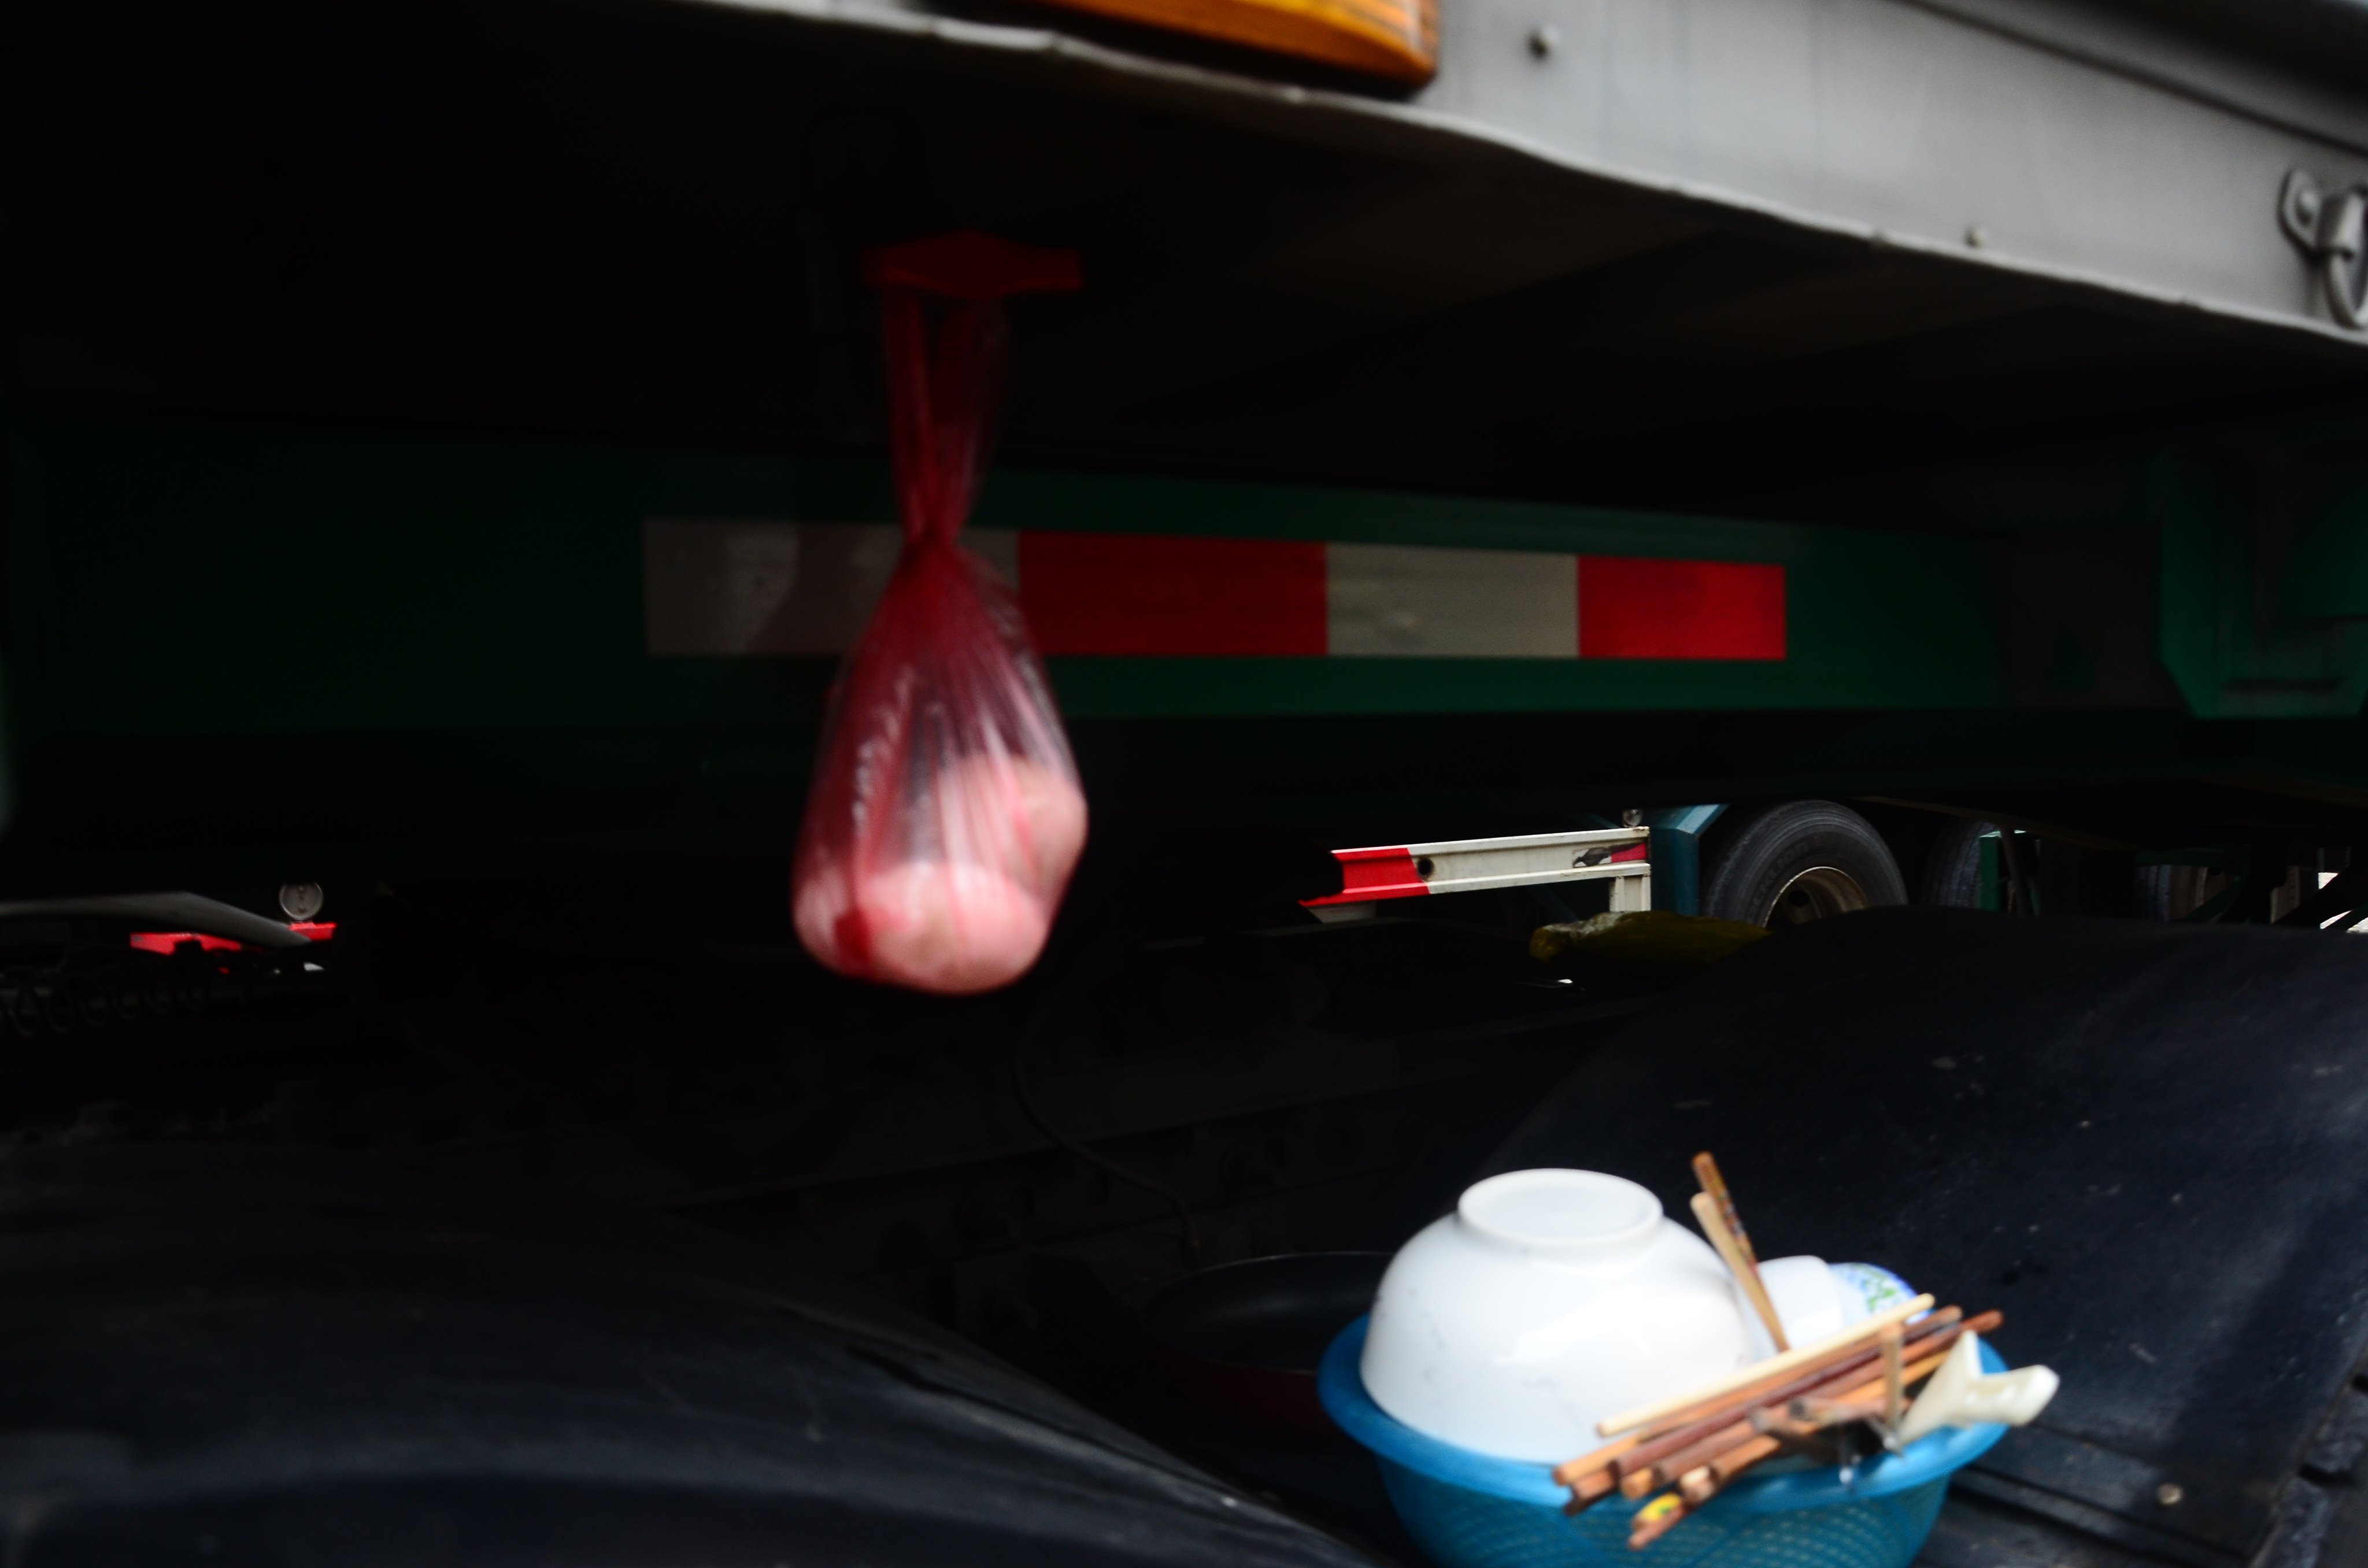 Hàng trăm lái xe nấu ăn dưới gầm container mùa dịch corona tại cửa khẩu